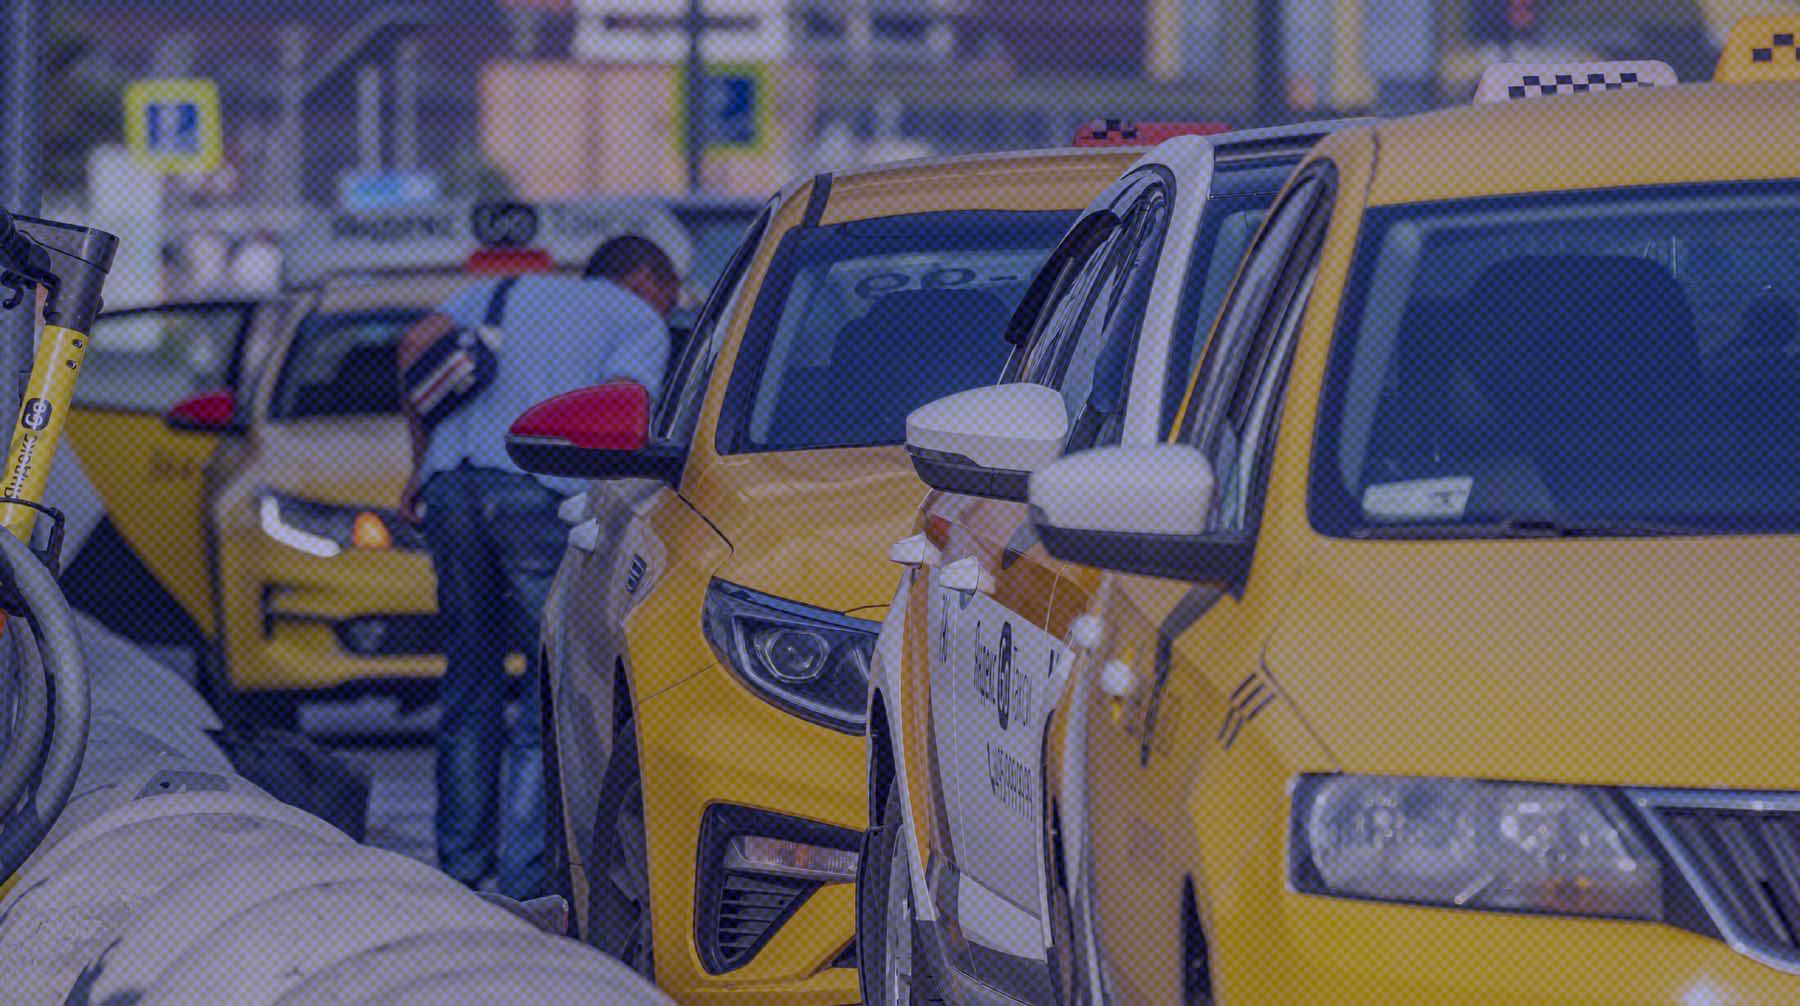 Использование сервиса приведет к дополнительным тратам и уменьшит число такси, опасаются в профсоюзе Фото: Global Look Press / Константин Кокошкин